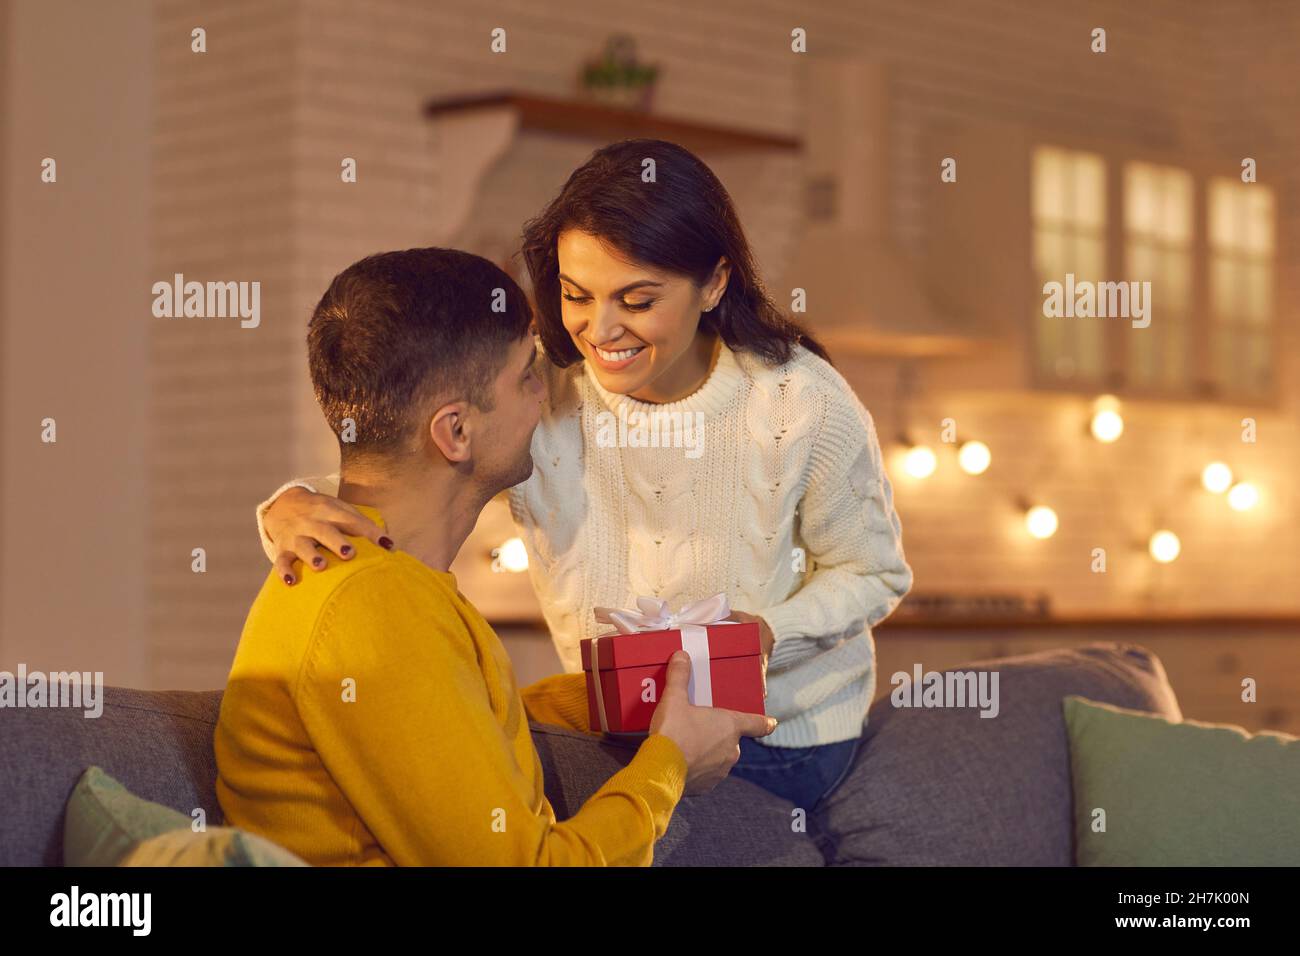 Jeune aimant heureux couple souriant donnant des cadeaux de vacances pendant la fête de la Saint Valentin Banque D'Images